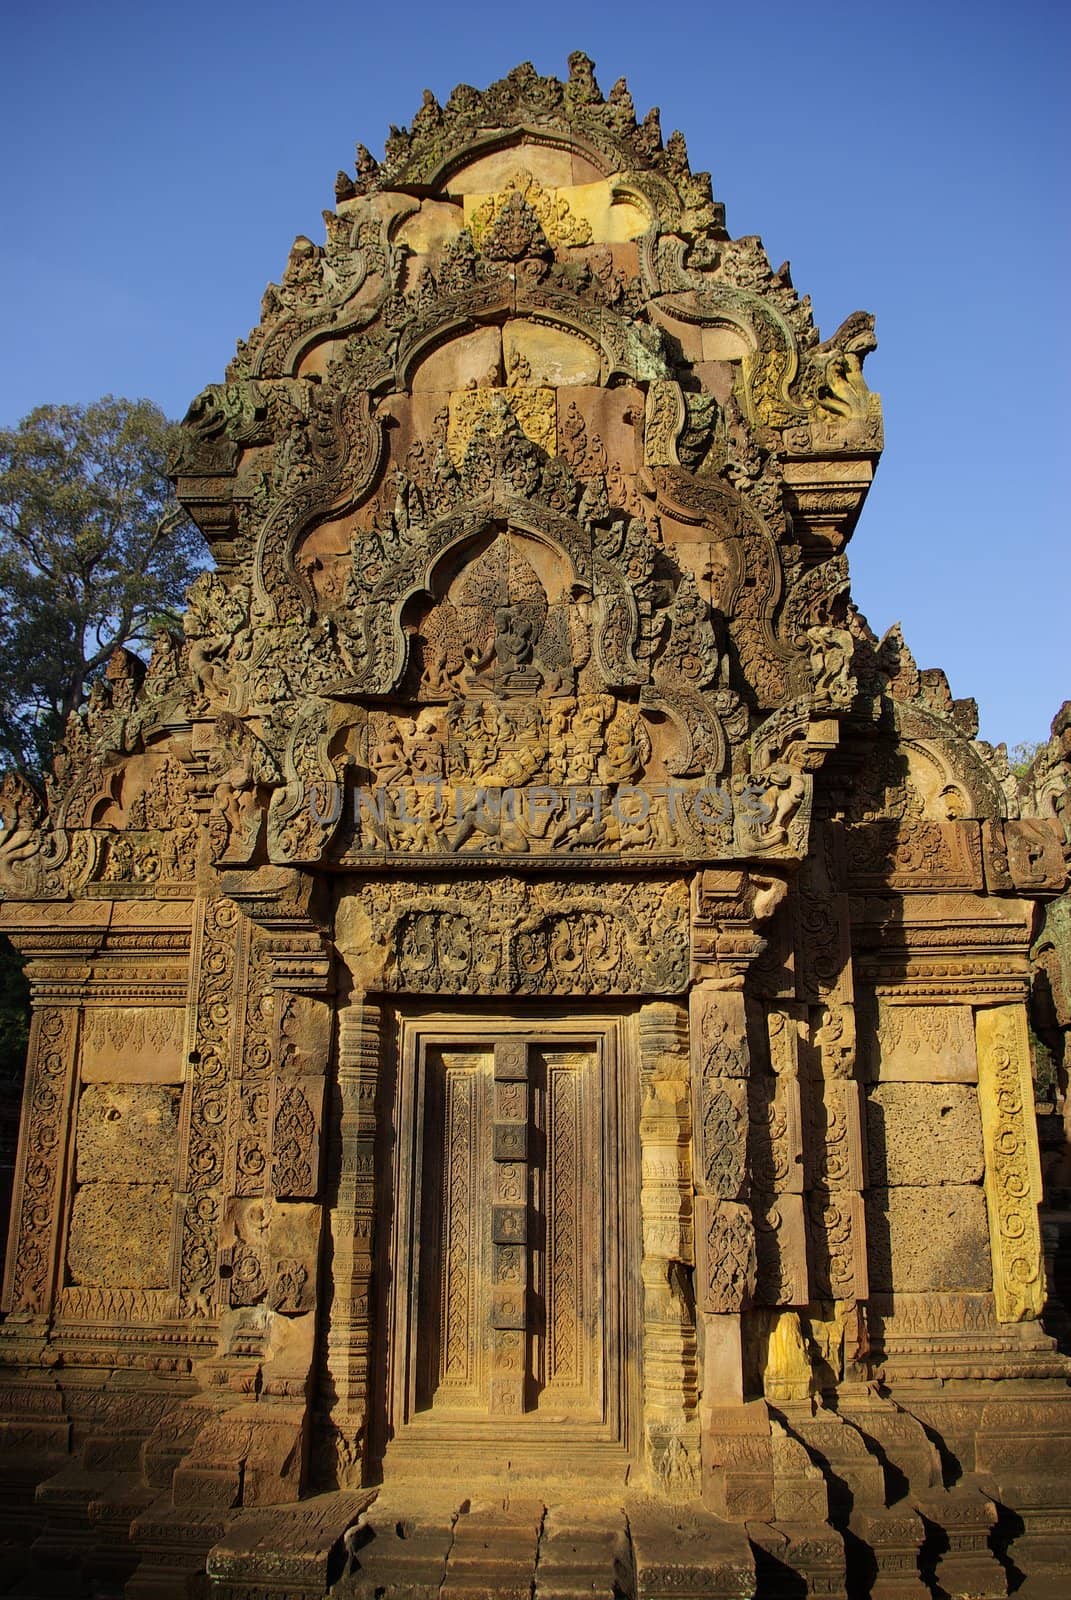 View of a stone door in the Prasat Kravan temple in Angkor